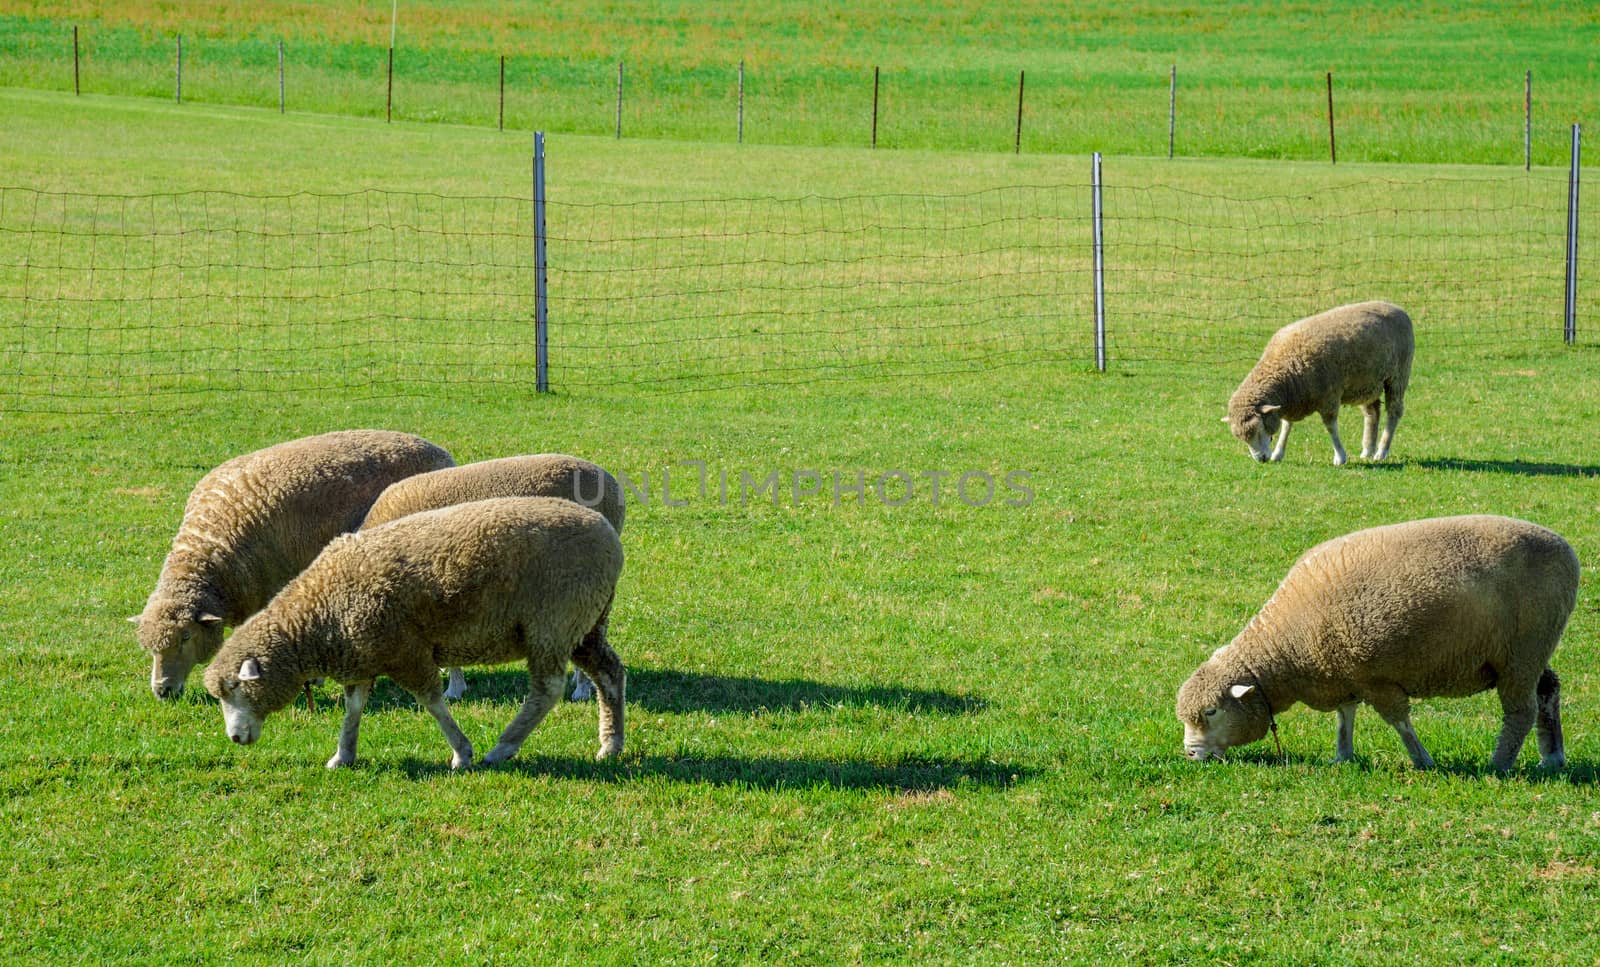 Sheeps farm in Sapporo Japan2 by gjeerawut